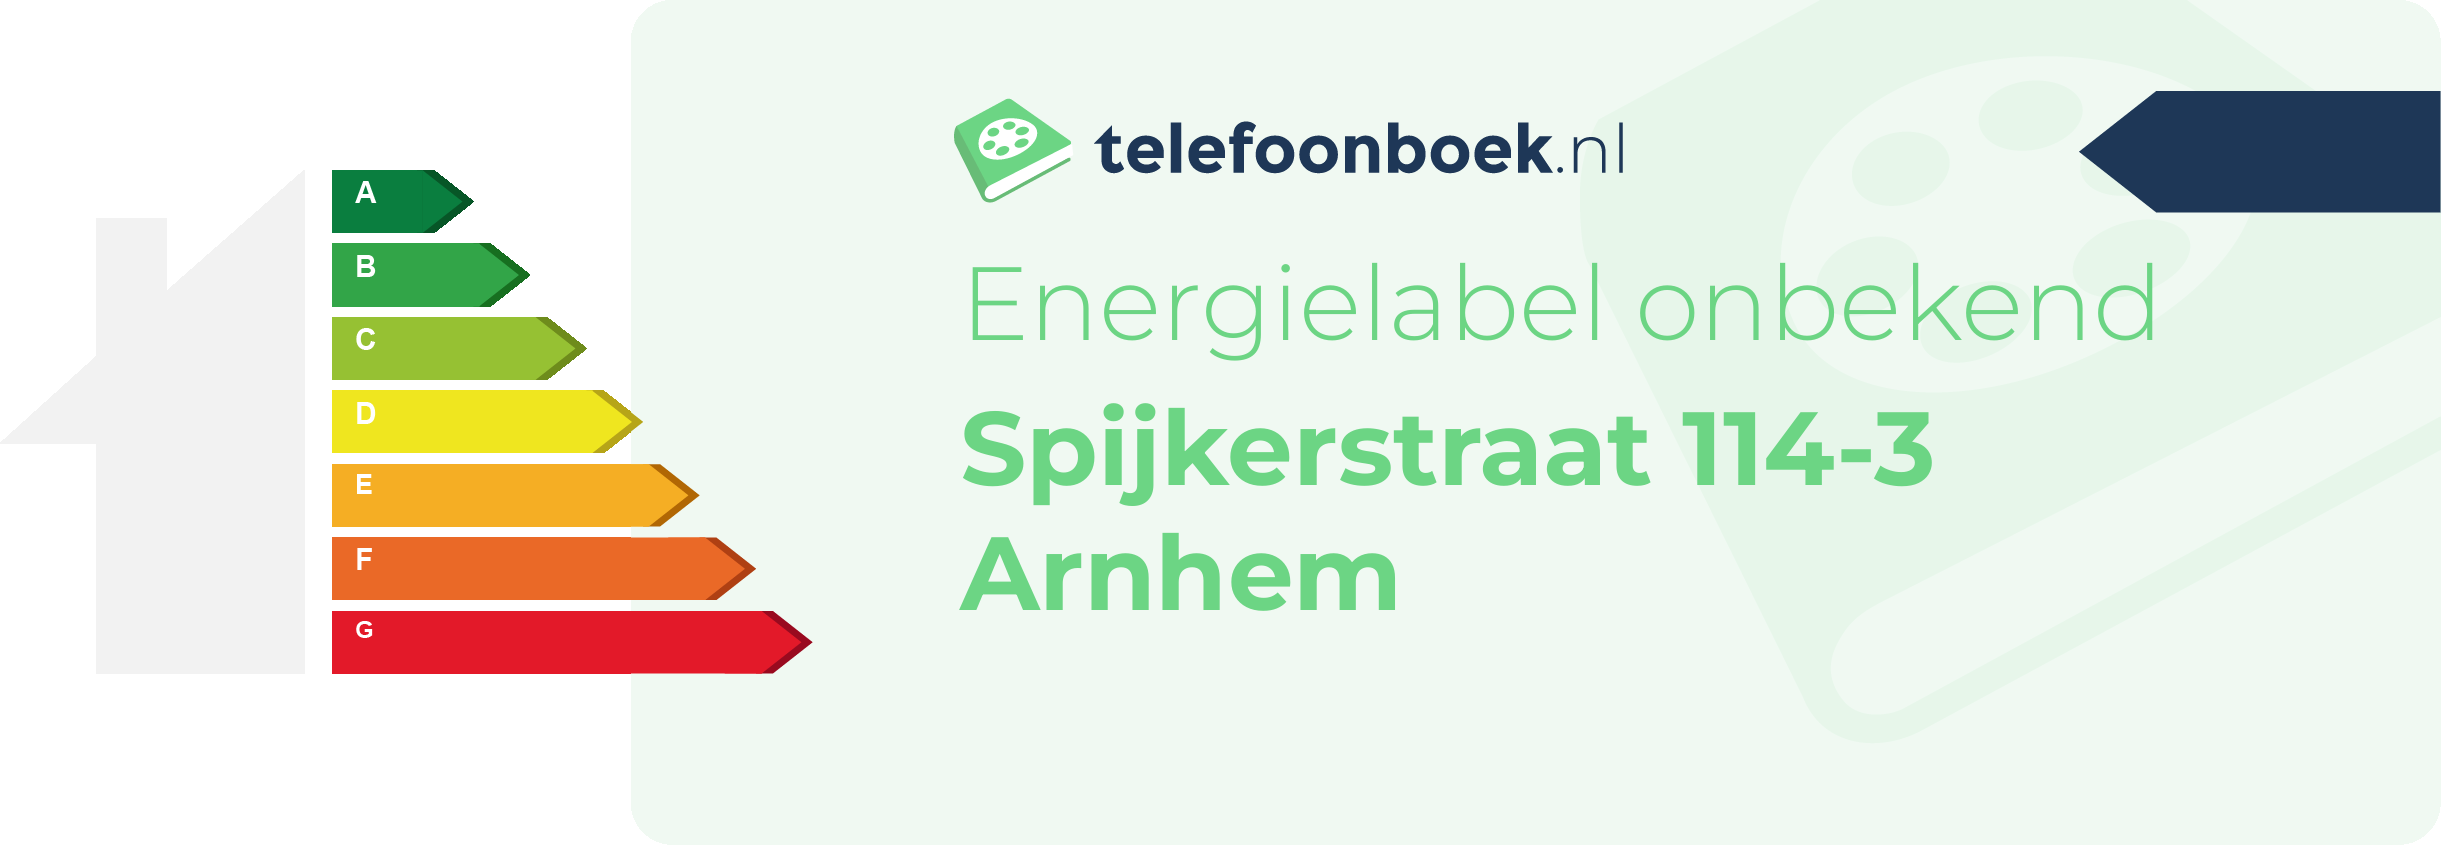 Energielabel Spijkerstraat 114-3 Arnhem